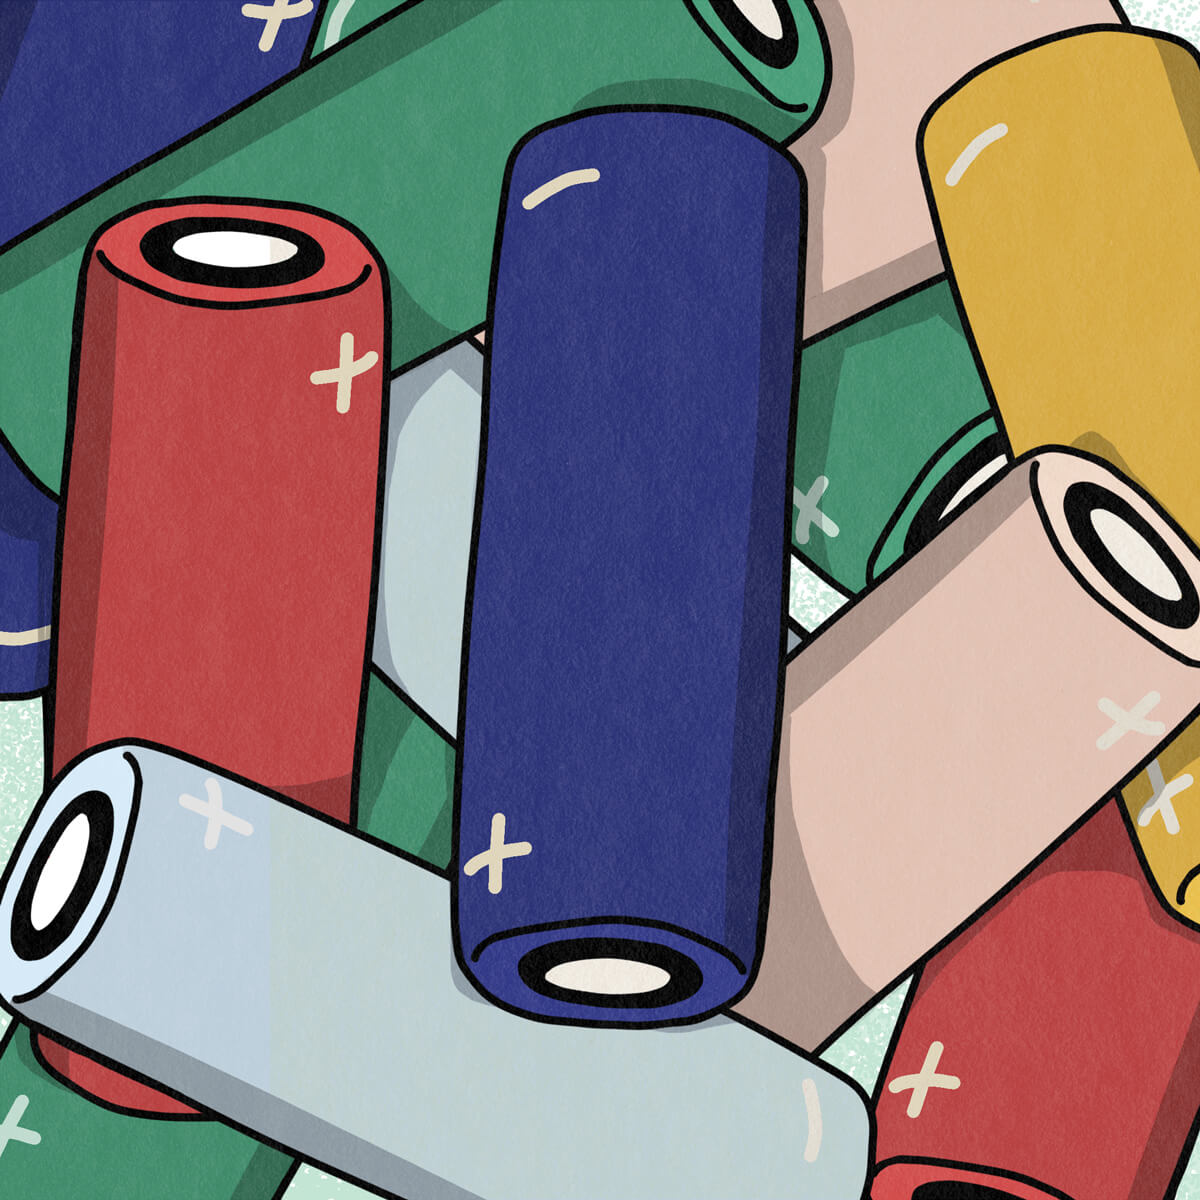 Batterie, comment choisir votre accumulateur ? | Pulp